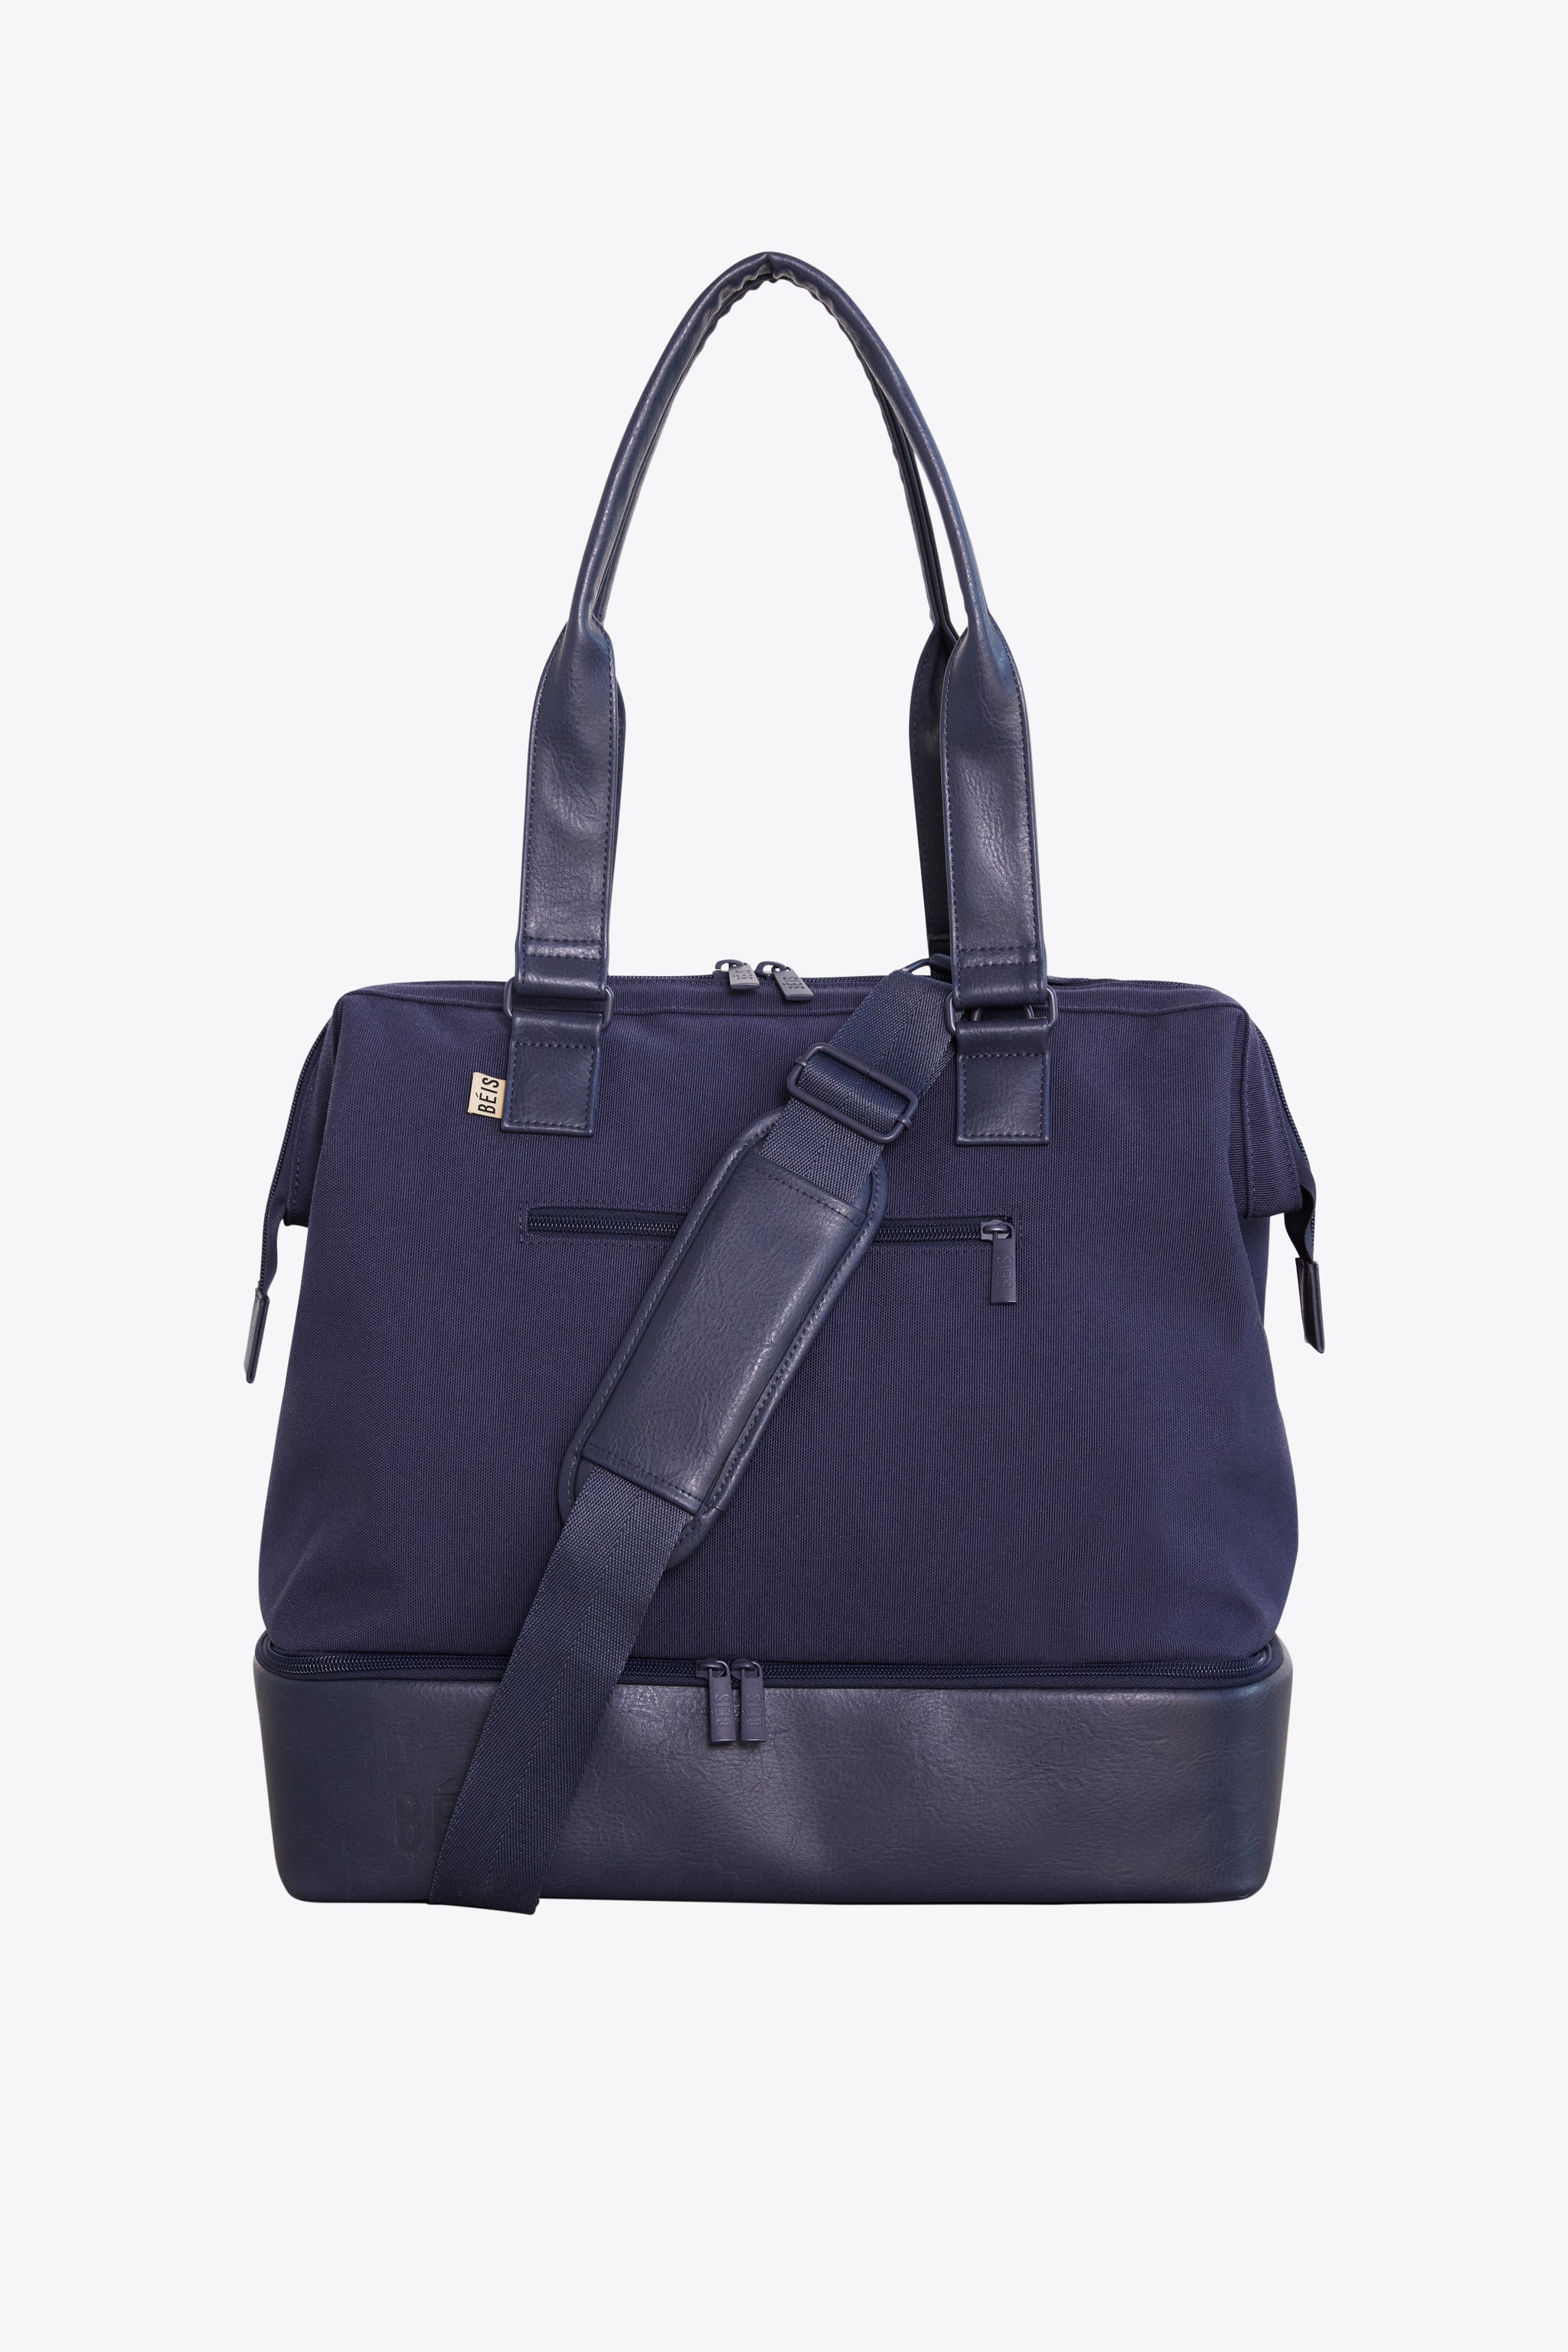 BÉIS 'The Mini Weekender' in Navy - Mini Blue Weekender Bag & Small ...